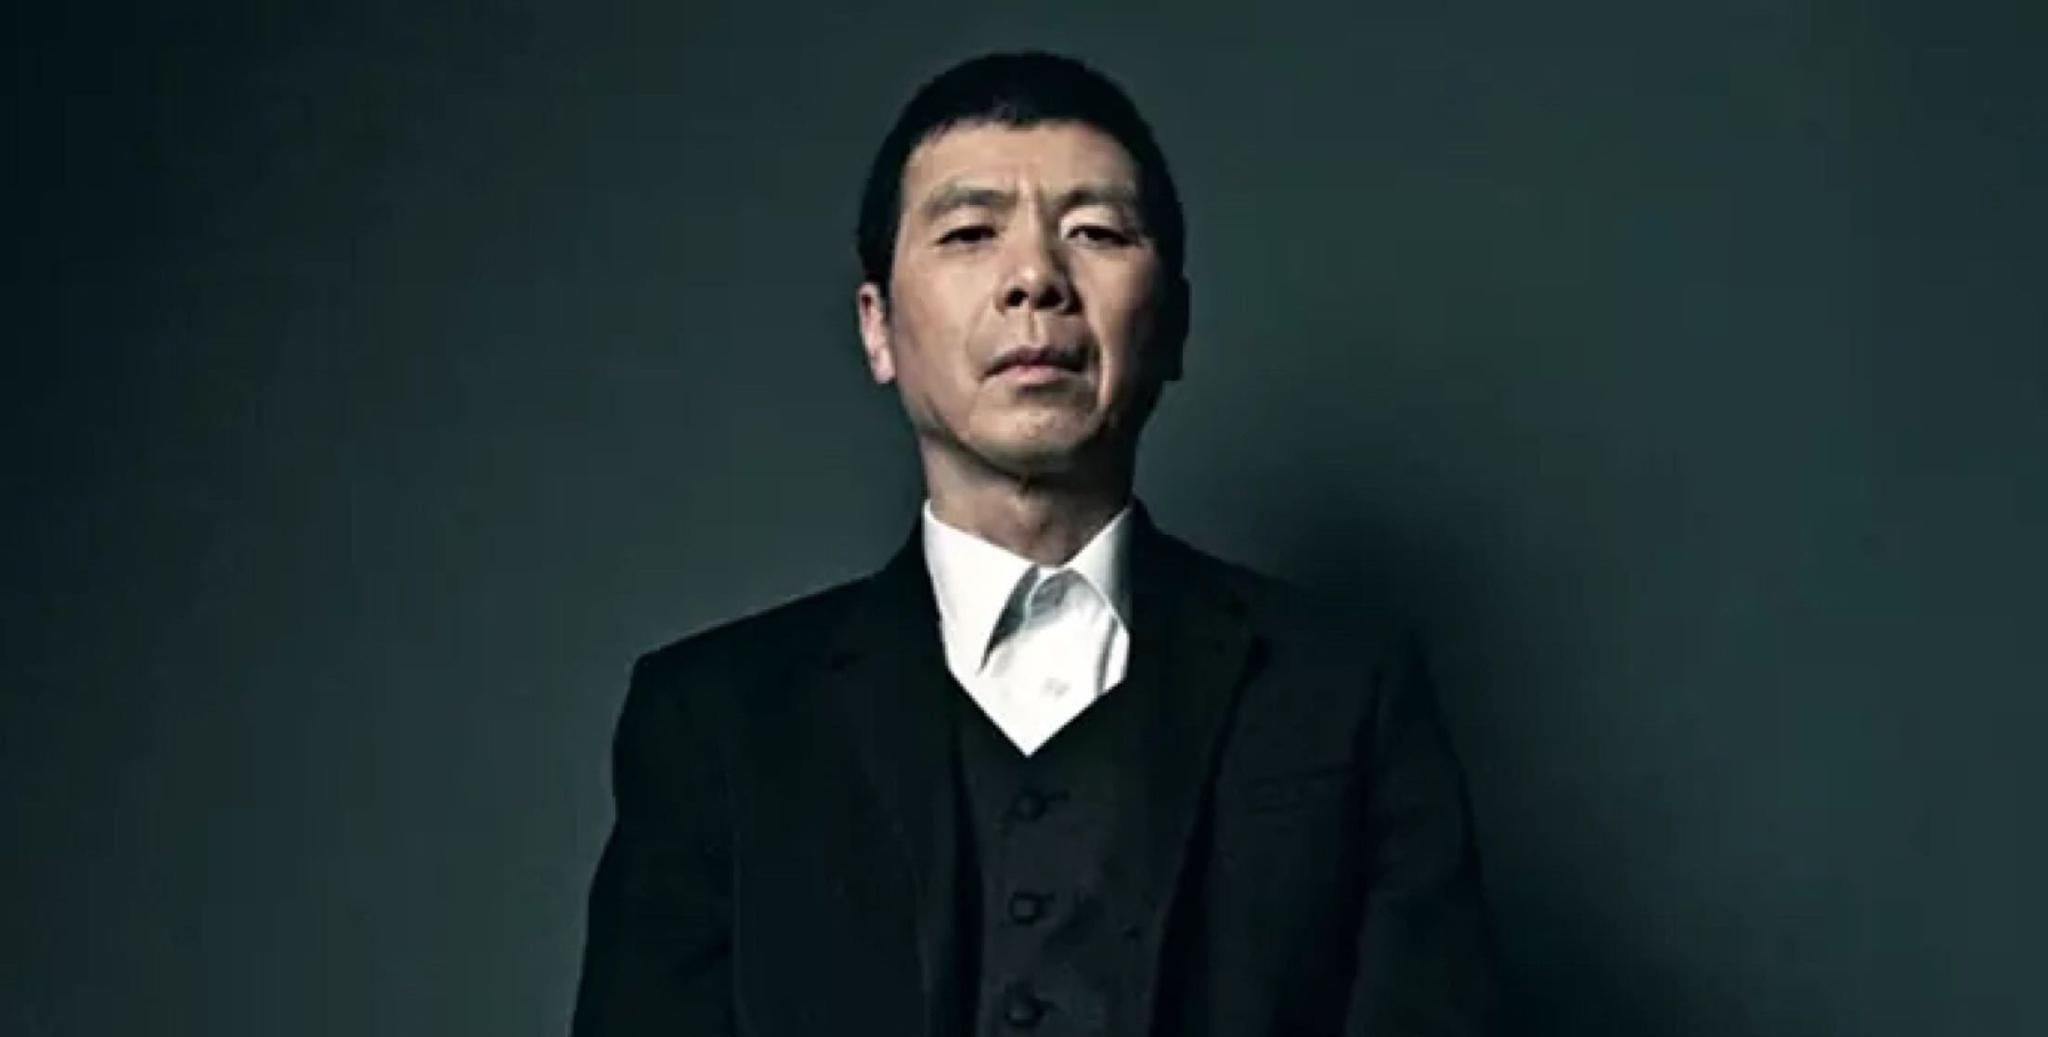 中国（China）著名导演 冯小刚（Feng Xiaogang） 创造独具特色的电影范式 | Bigorangemedia